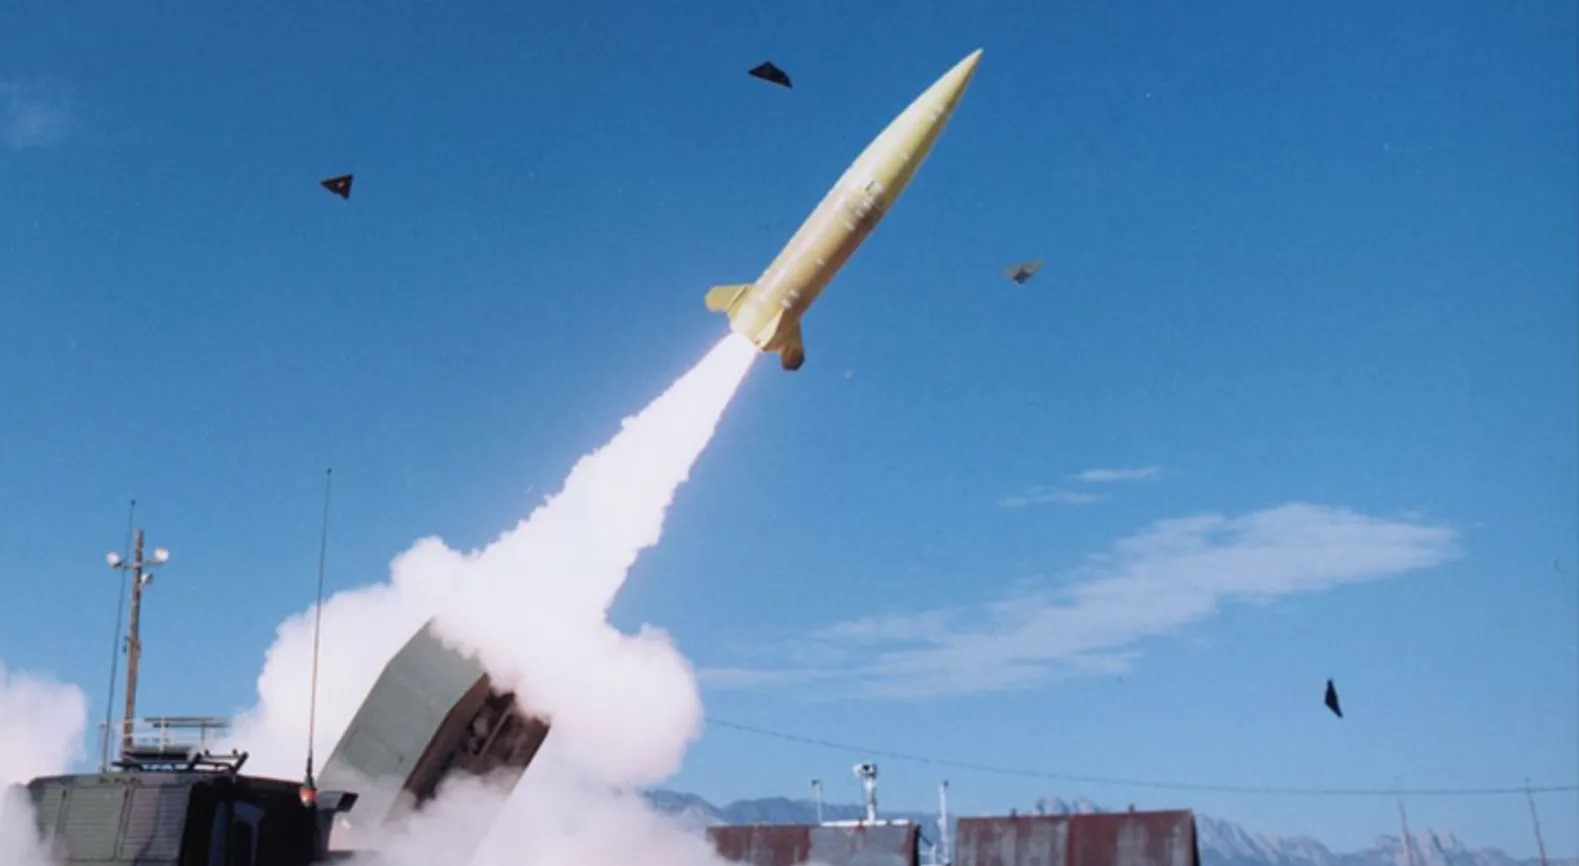 نظام “أتاكمز” الصاروخي بعيد المدى لأوكرانيا بعد تحفظ سابق على إمداد كييف به